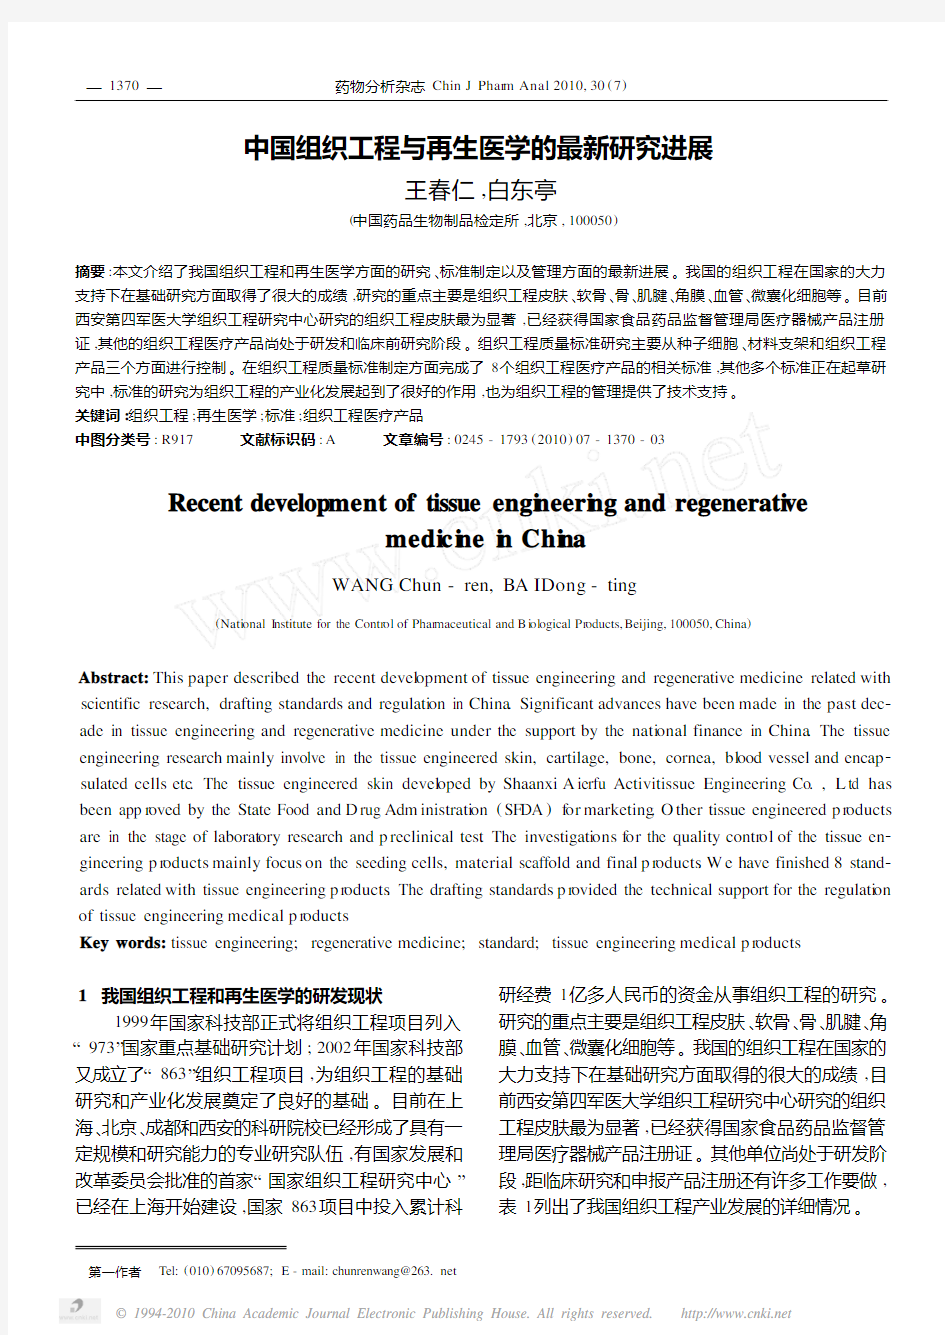 中国组织工程与再生医学的最新研究进展